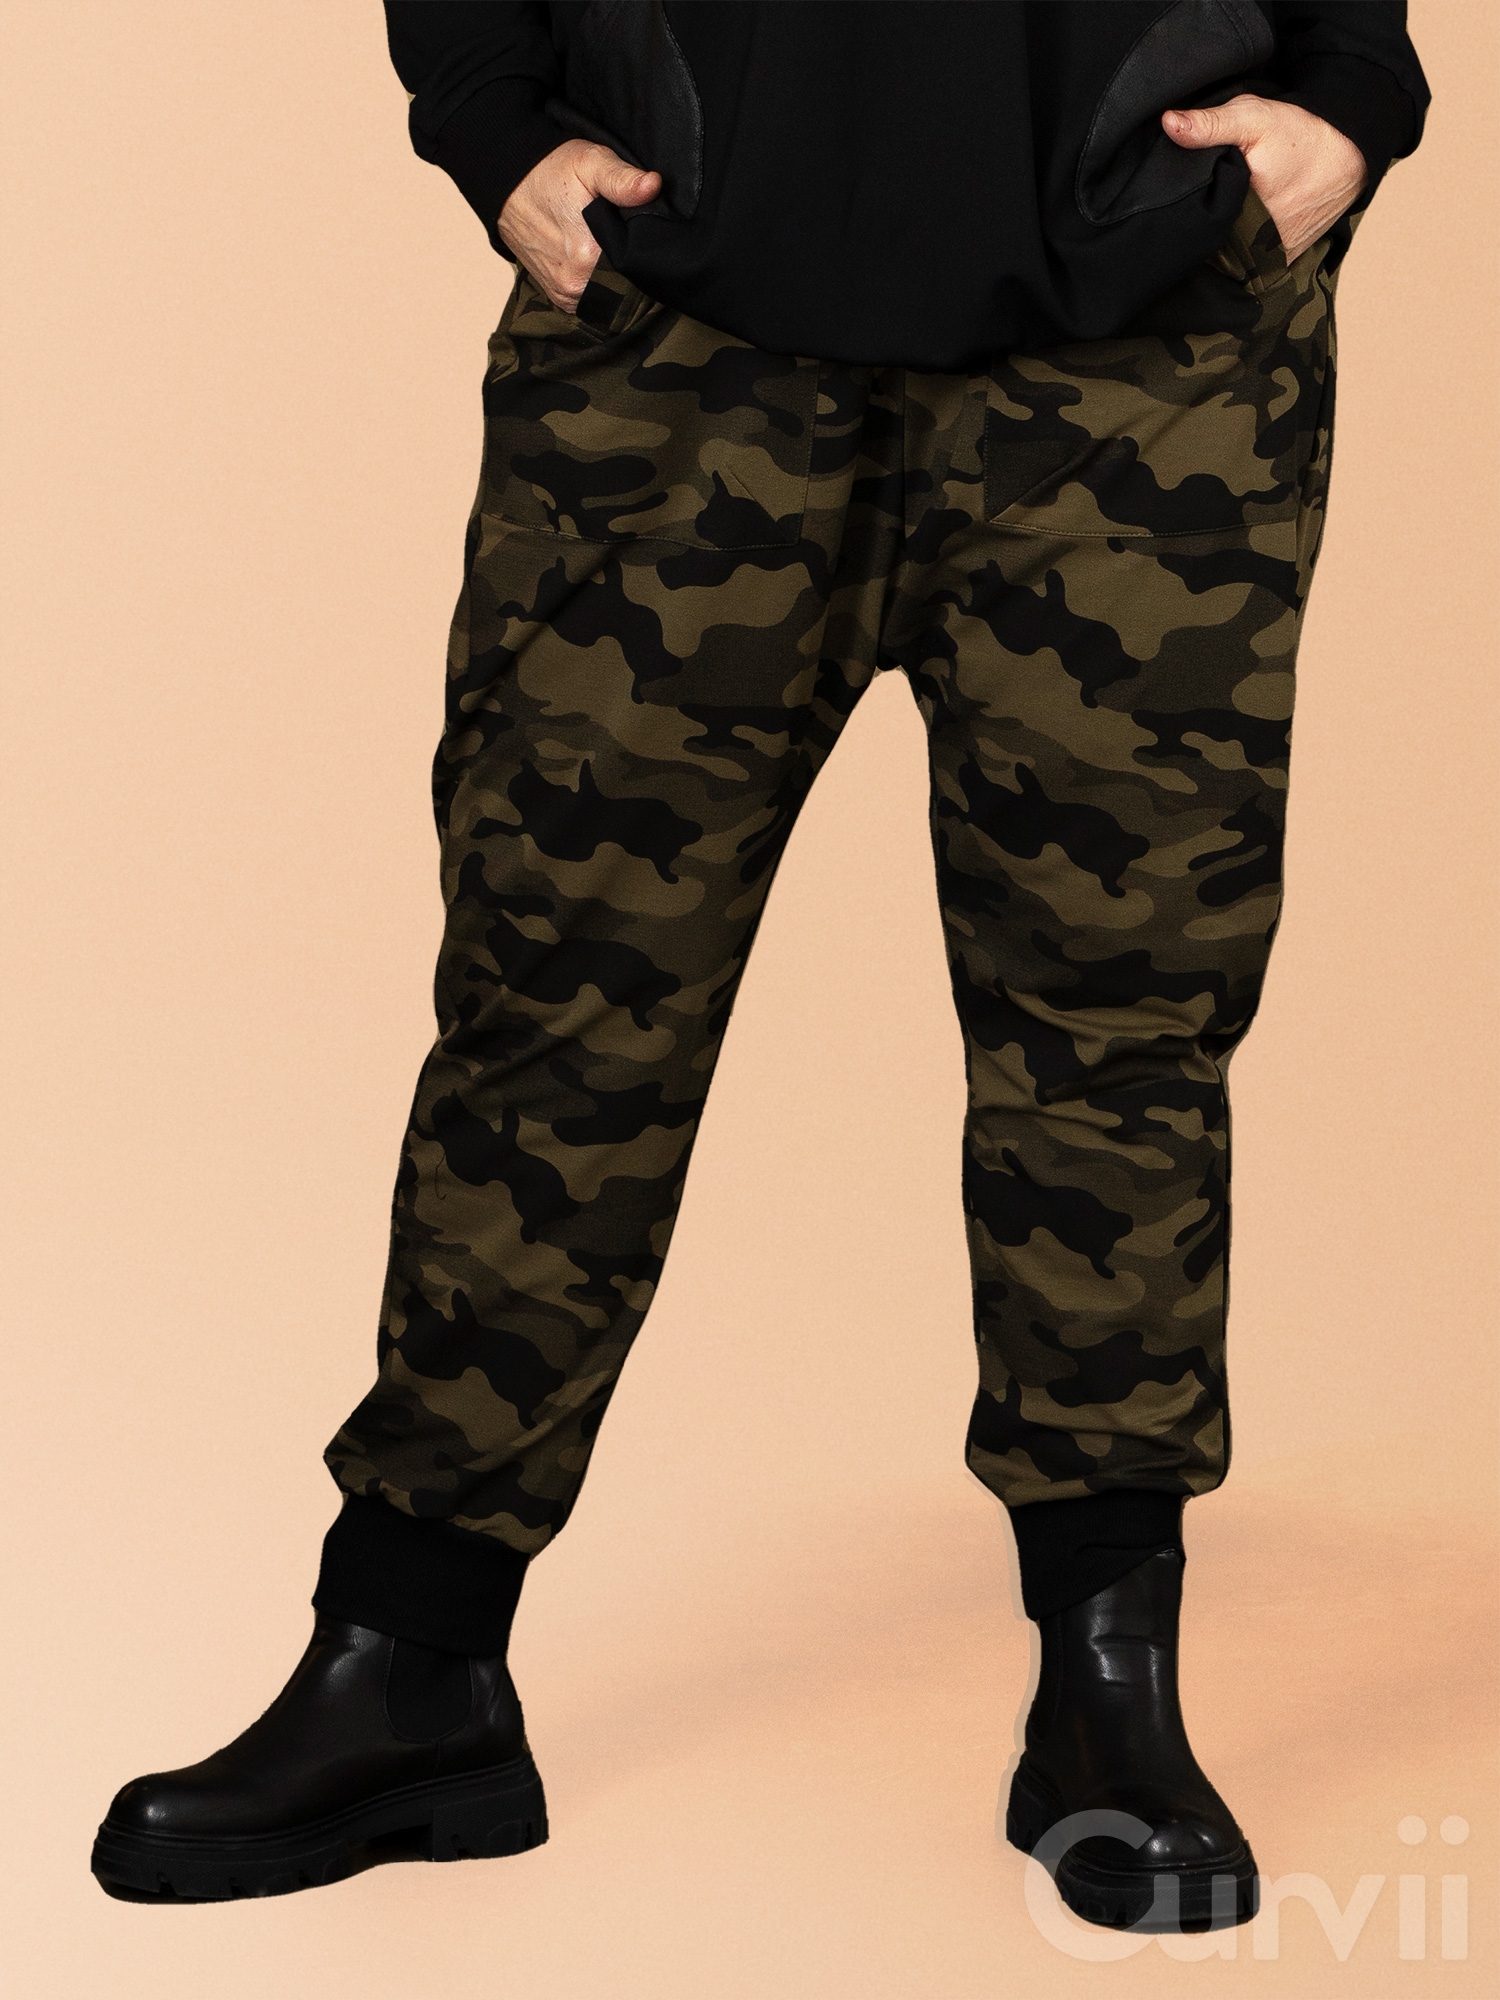 Møde angivet brutalt Gozzip Black CHRISTEL - Løse bukser i lækker bomulds sweat med army grønt  camouflage print